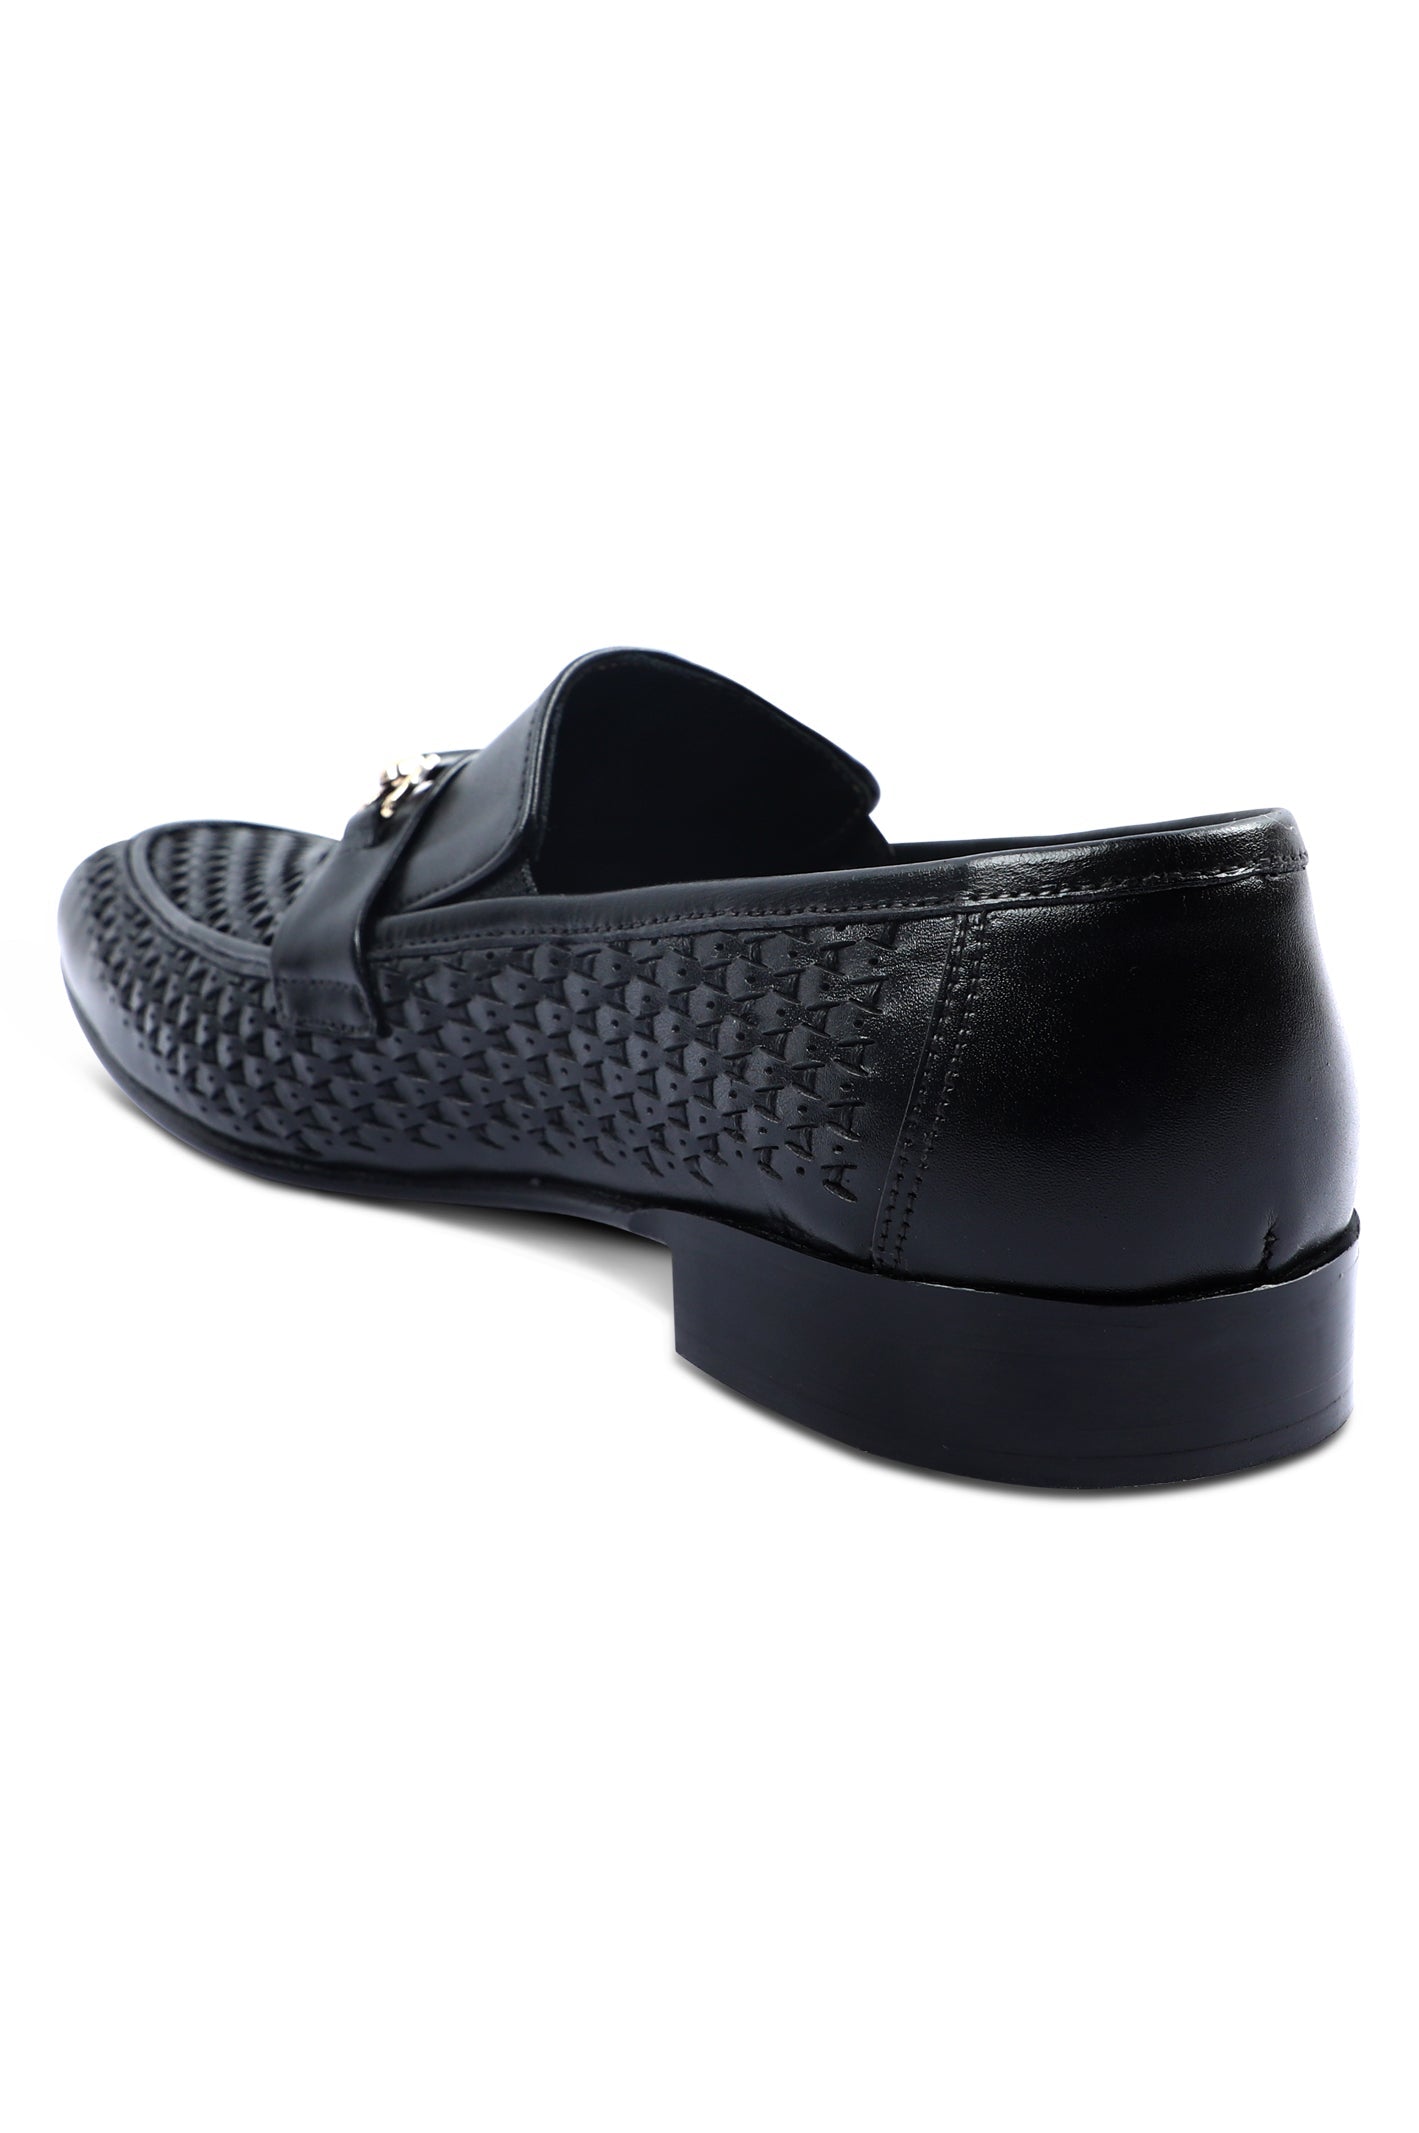 Formal Shoes For Men in Black SKU: SMF-0195-BLACK - Diners